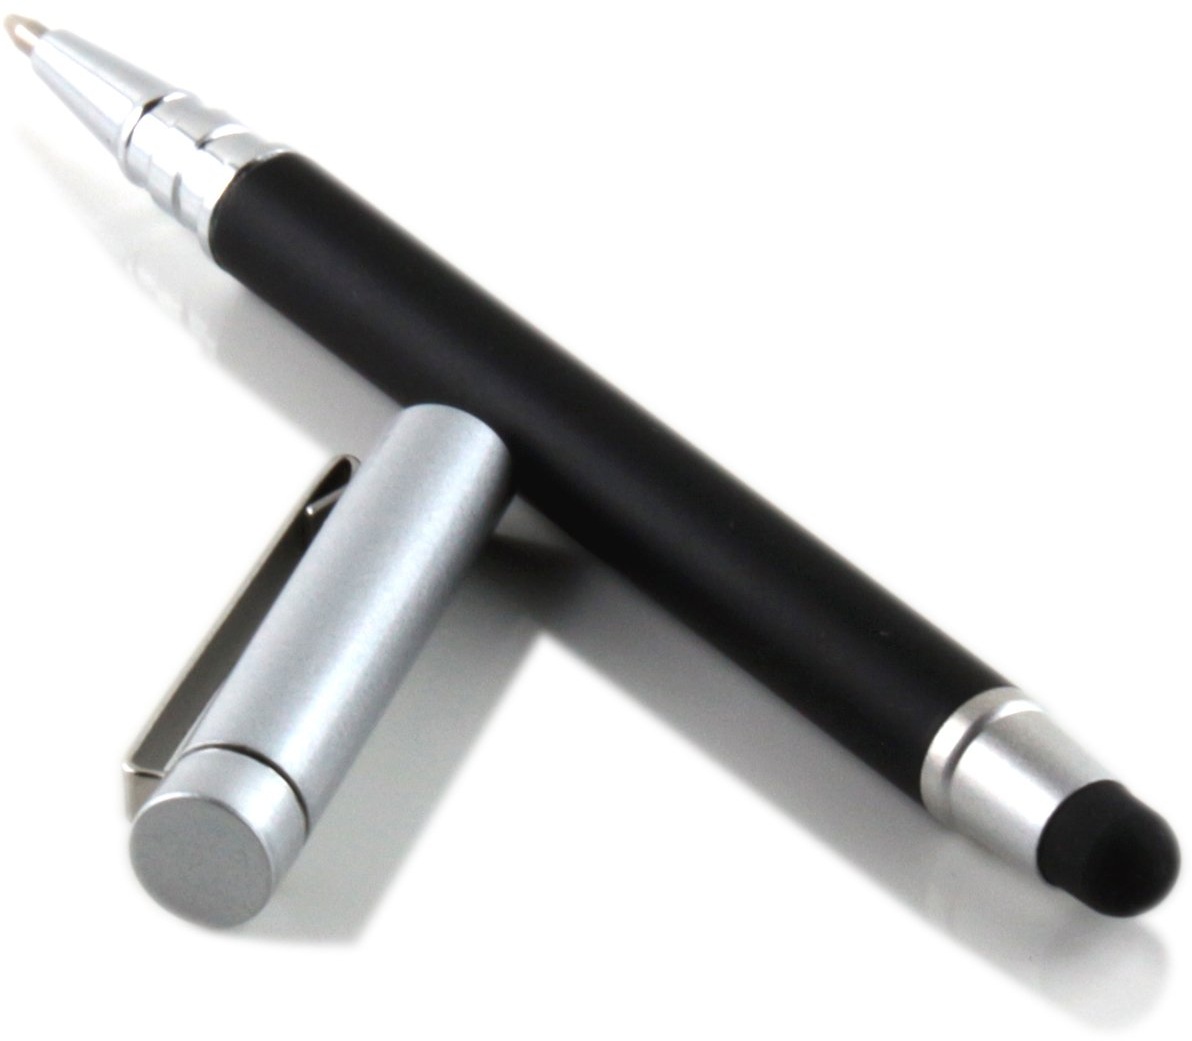 Slabo Stylus Touch Pen für iPad (2010-2022) | iPad Mini (2012-2021) | iPad Pro/iPad Air (2015-2022) | iPhone (2007-2022) etc Eingabestift und Kugelschreiber Touch Stift – schwarz | Silber